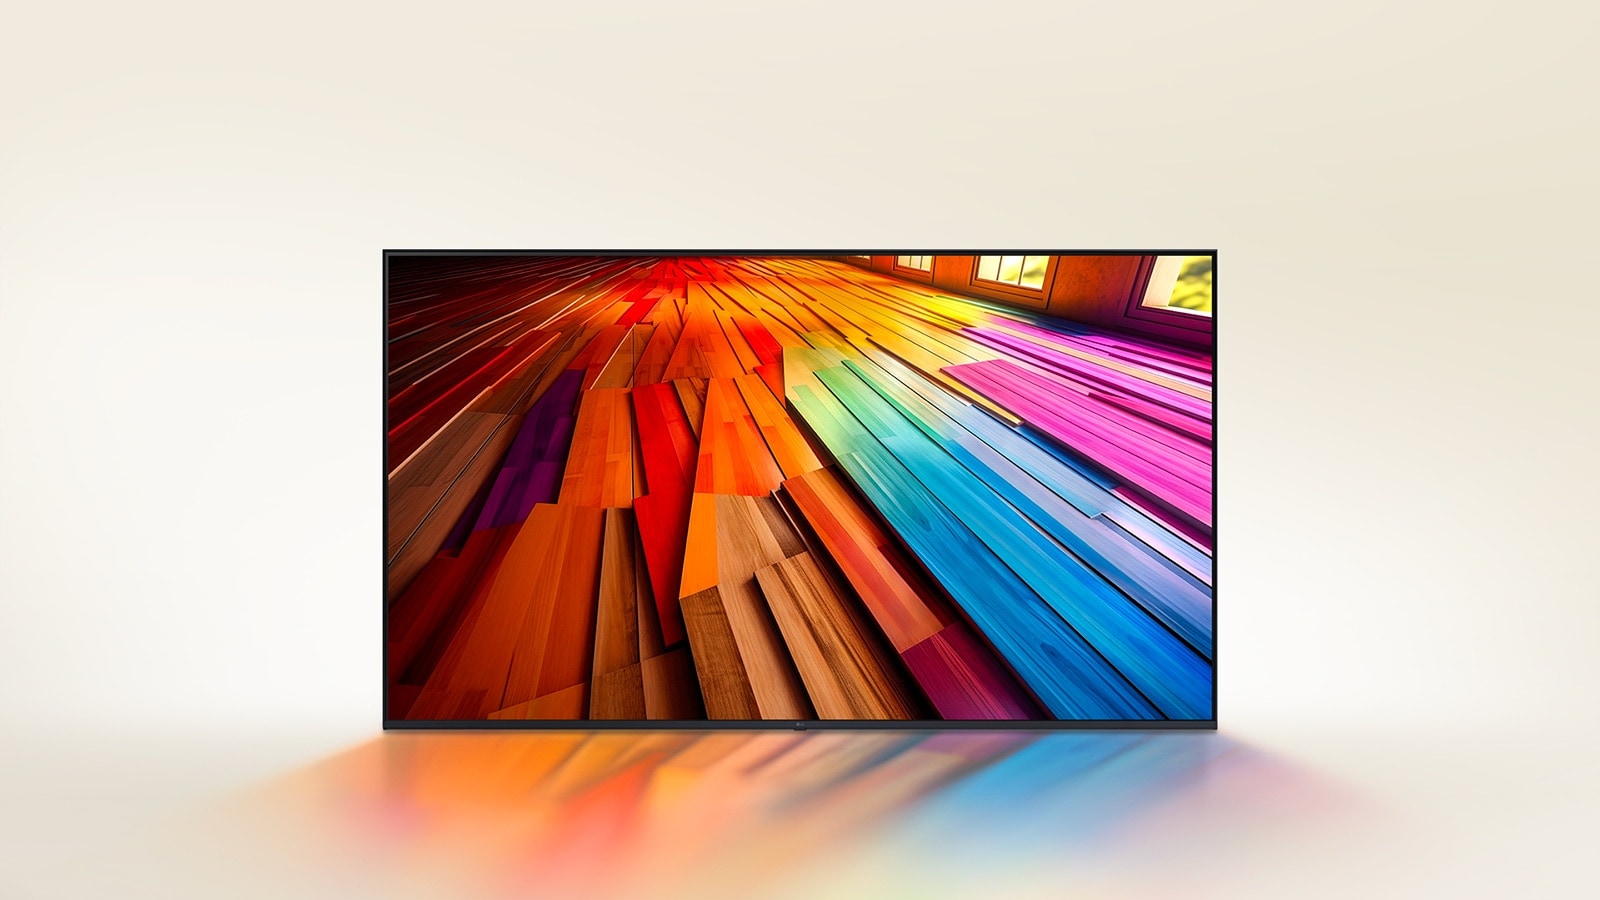 Ένα μεγάλο δάπεδο από σκληρό ξύλο με ζωηρά χρώματα εμφανίζεται σε μια LG UHD TV.